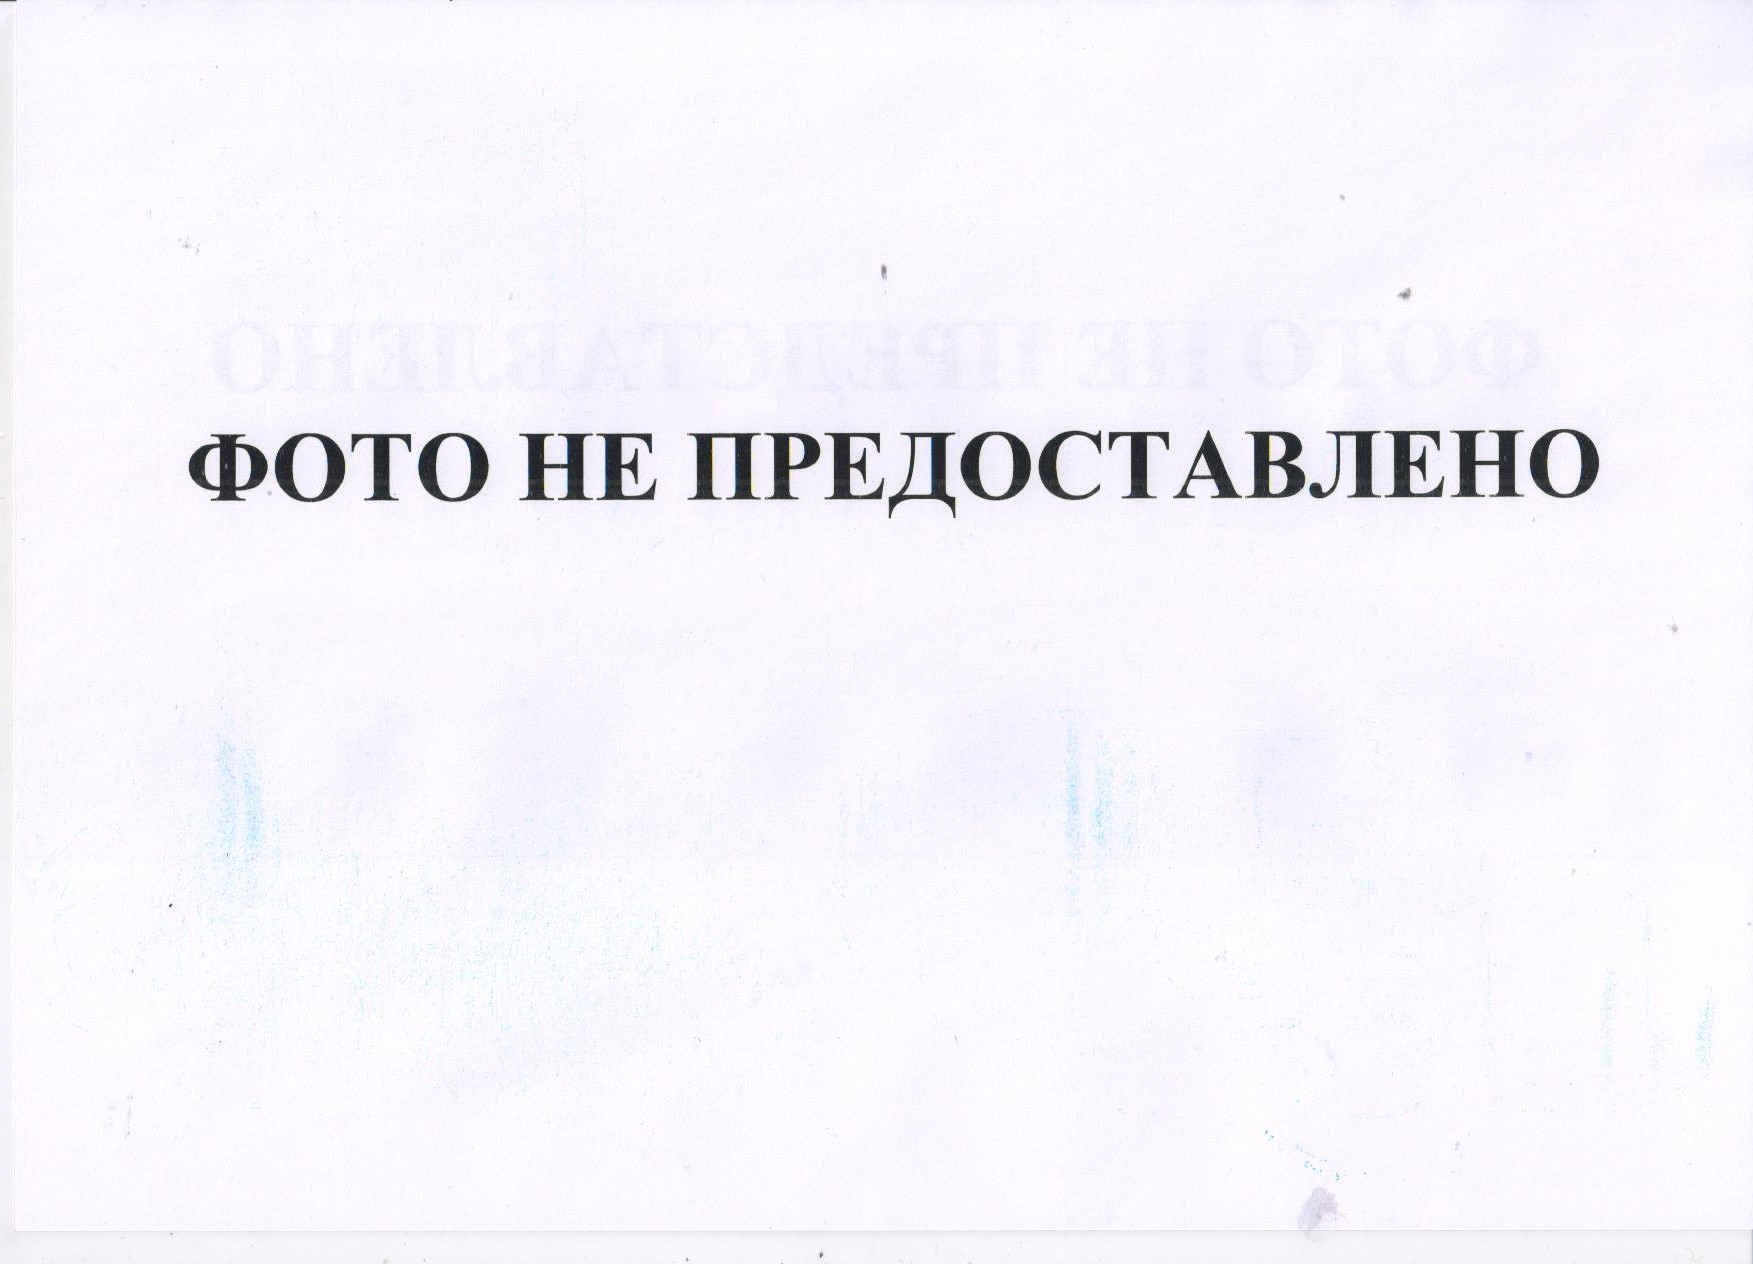 Право требования по исполнительному документу ВС 015742678 от 06.11.2013, выданному Новочебоксарским